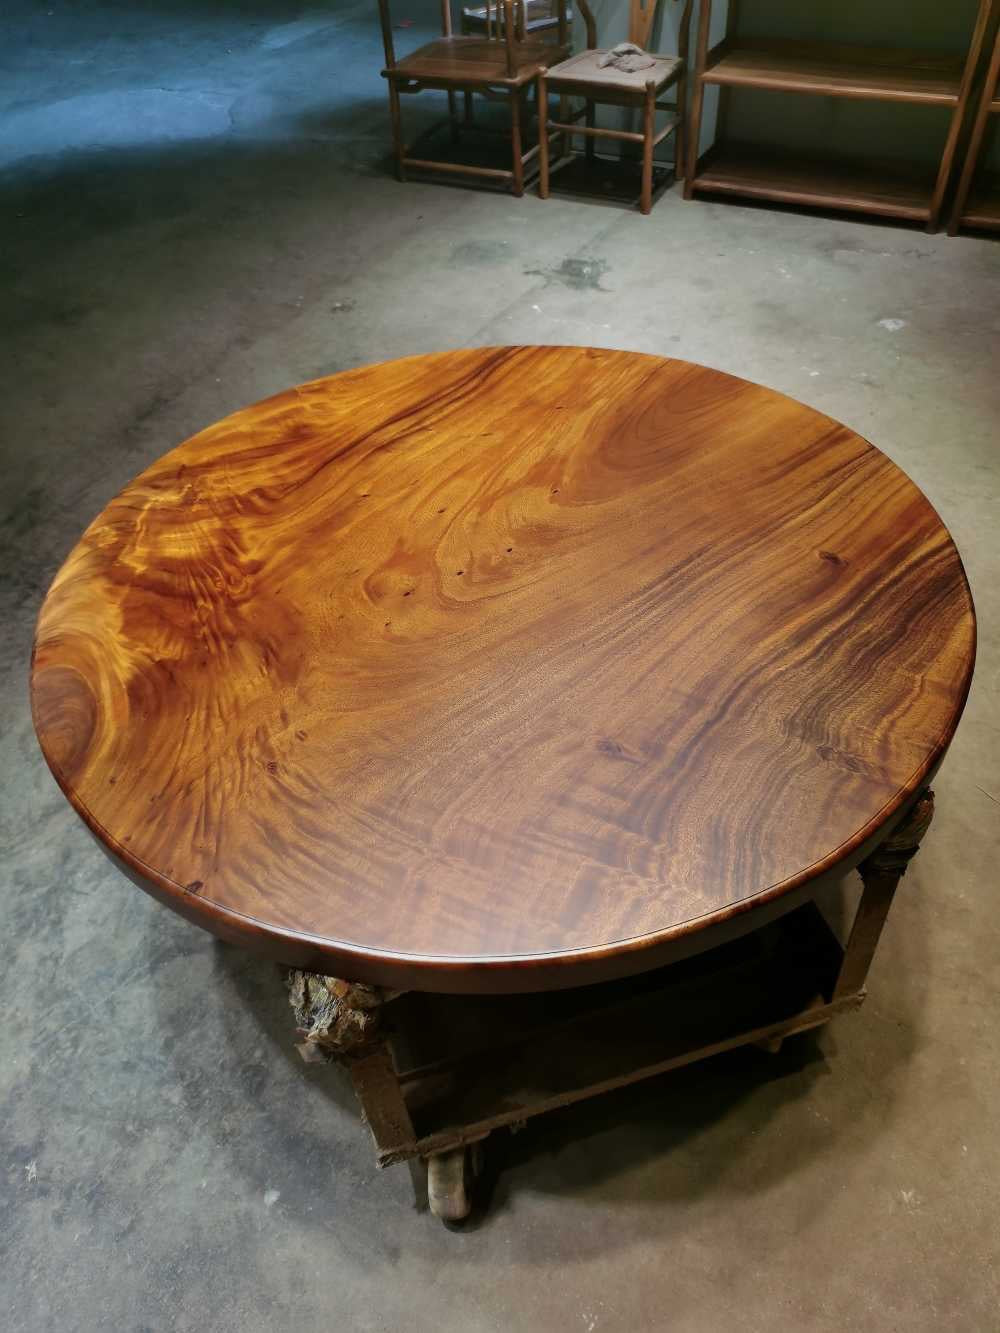 Runder Tisch aus rohem Holz, runder Tisch aus nicht Eichenholz, runde Tischplatten aus unlackiertem Holz, runder Tisch aus lebendem Kantenholz